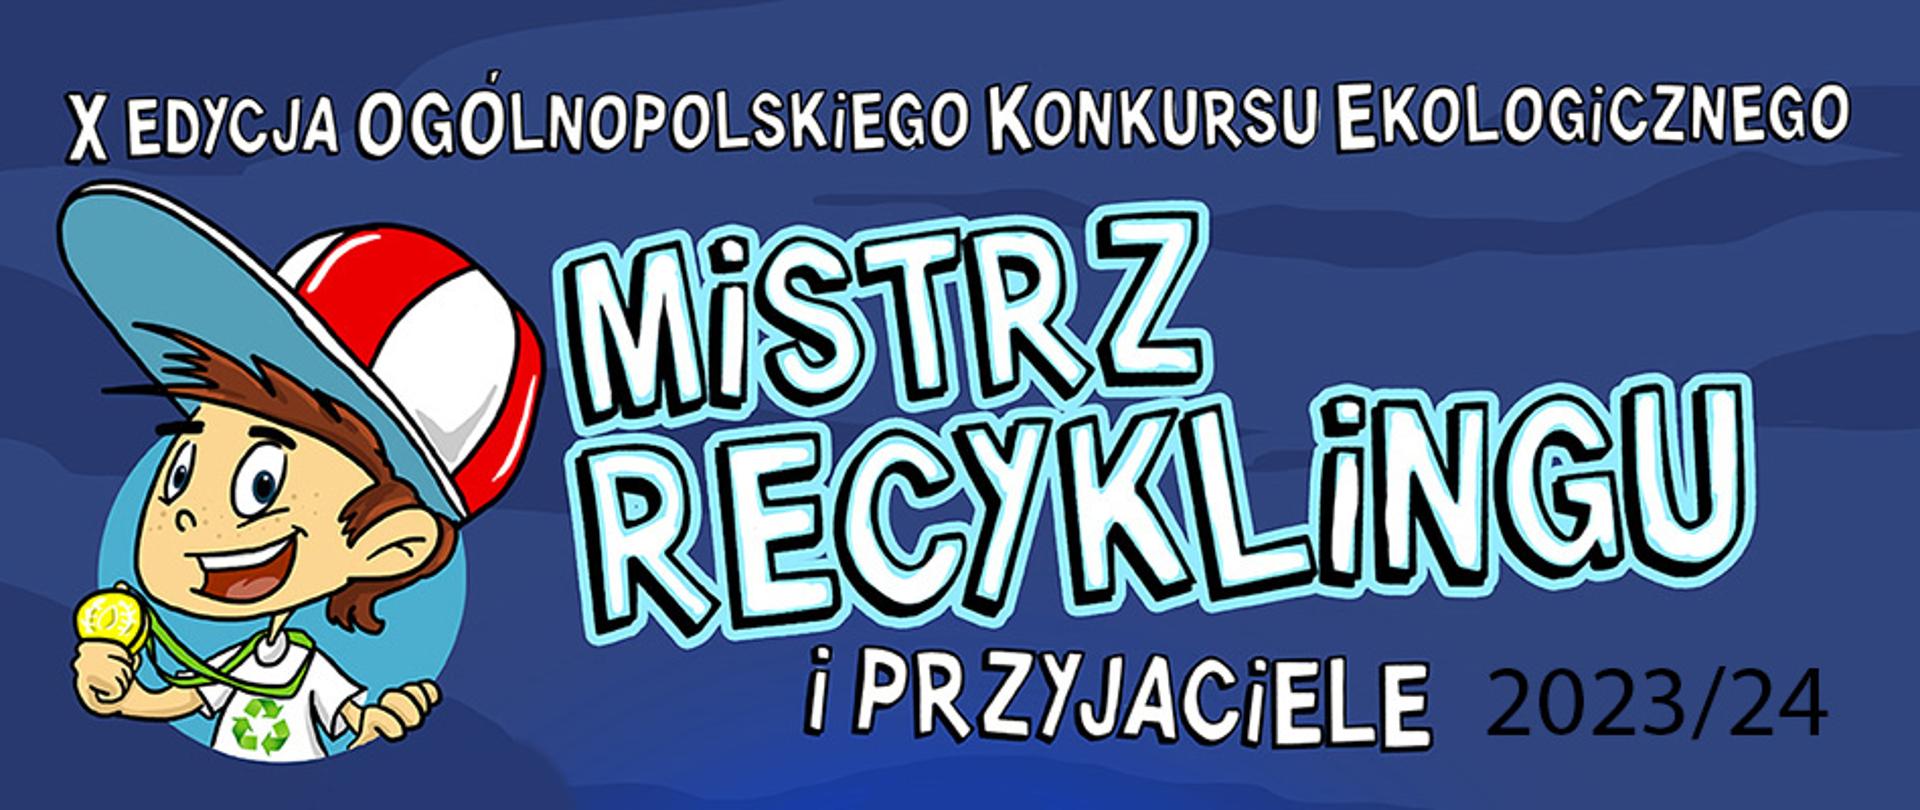 Baner promujący X edycję Ogólnopolskiego Konkursu Ekologicznego pn. Mistrz recyklingu 